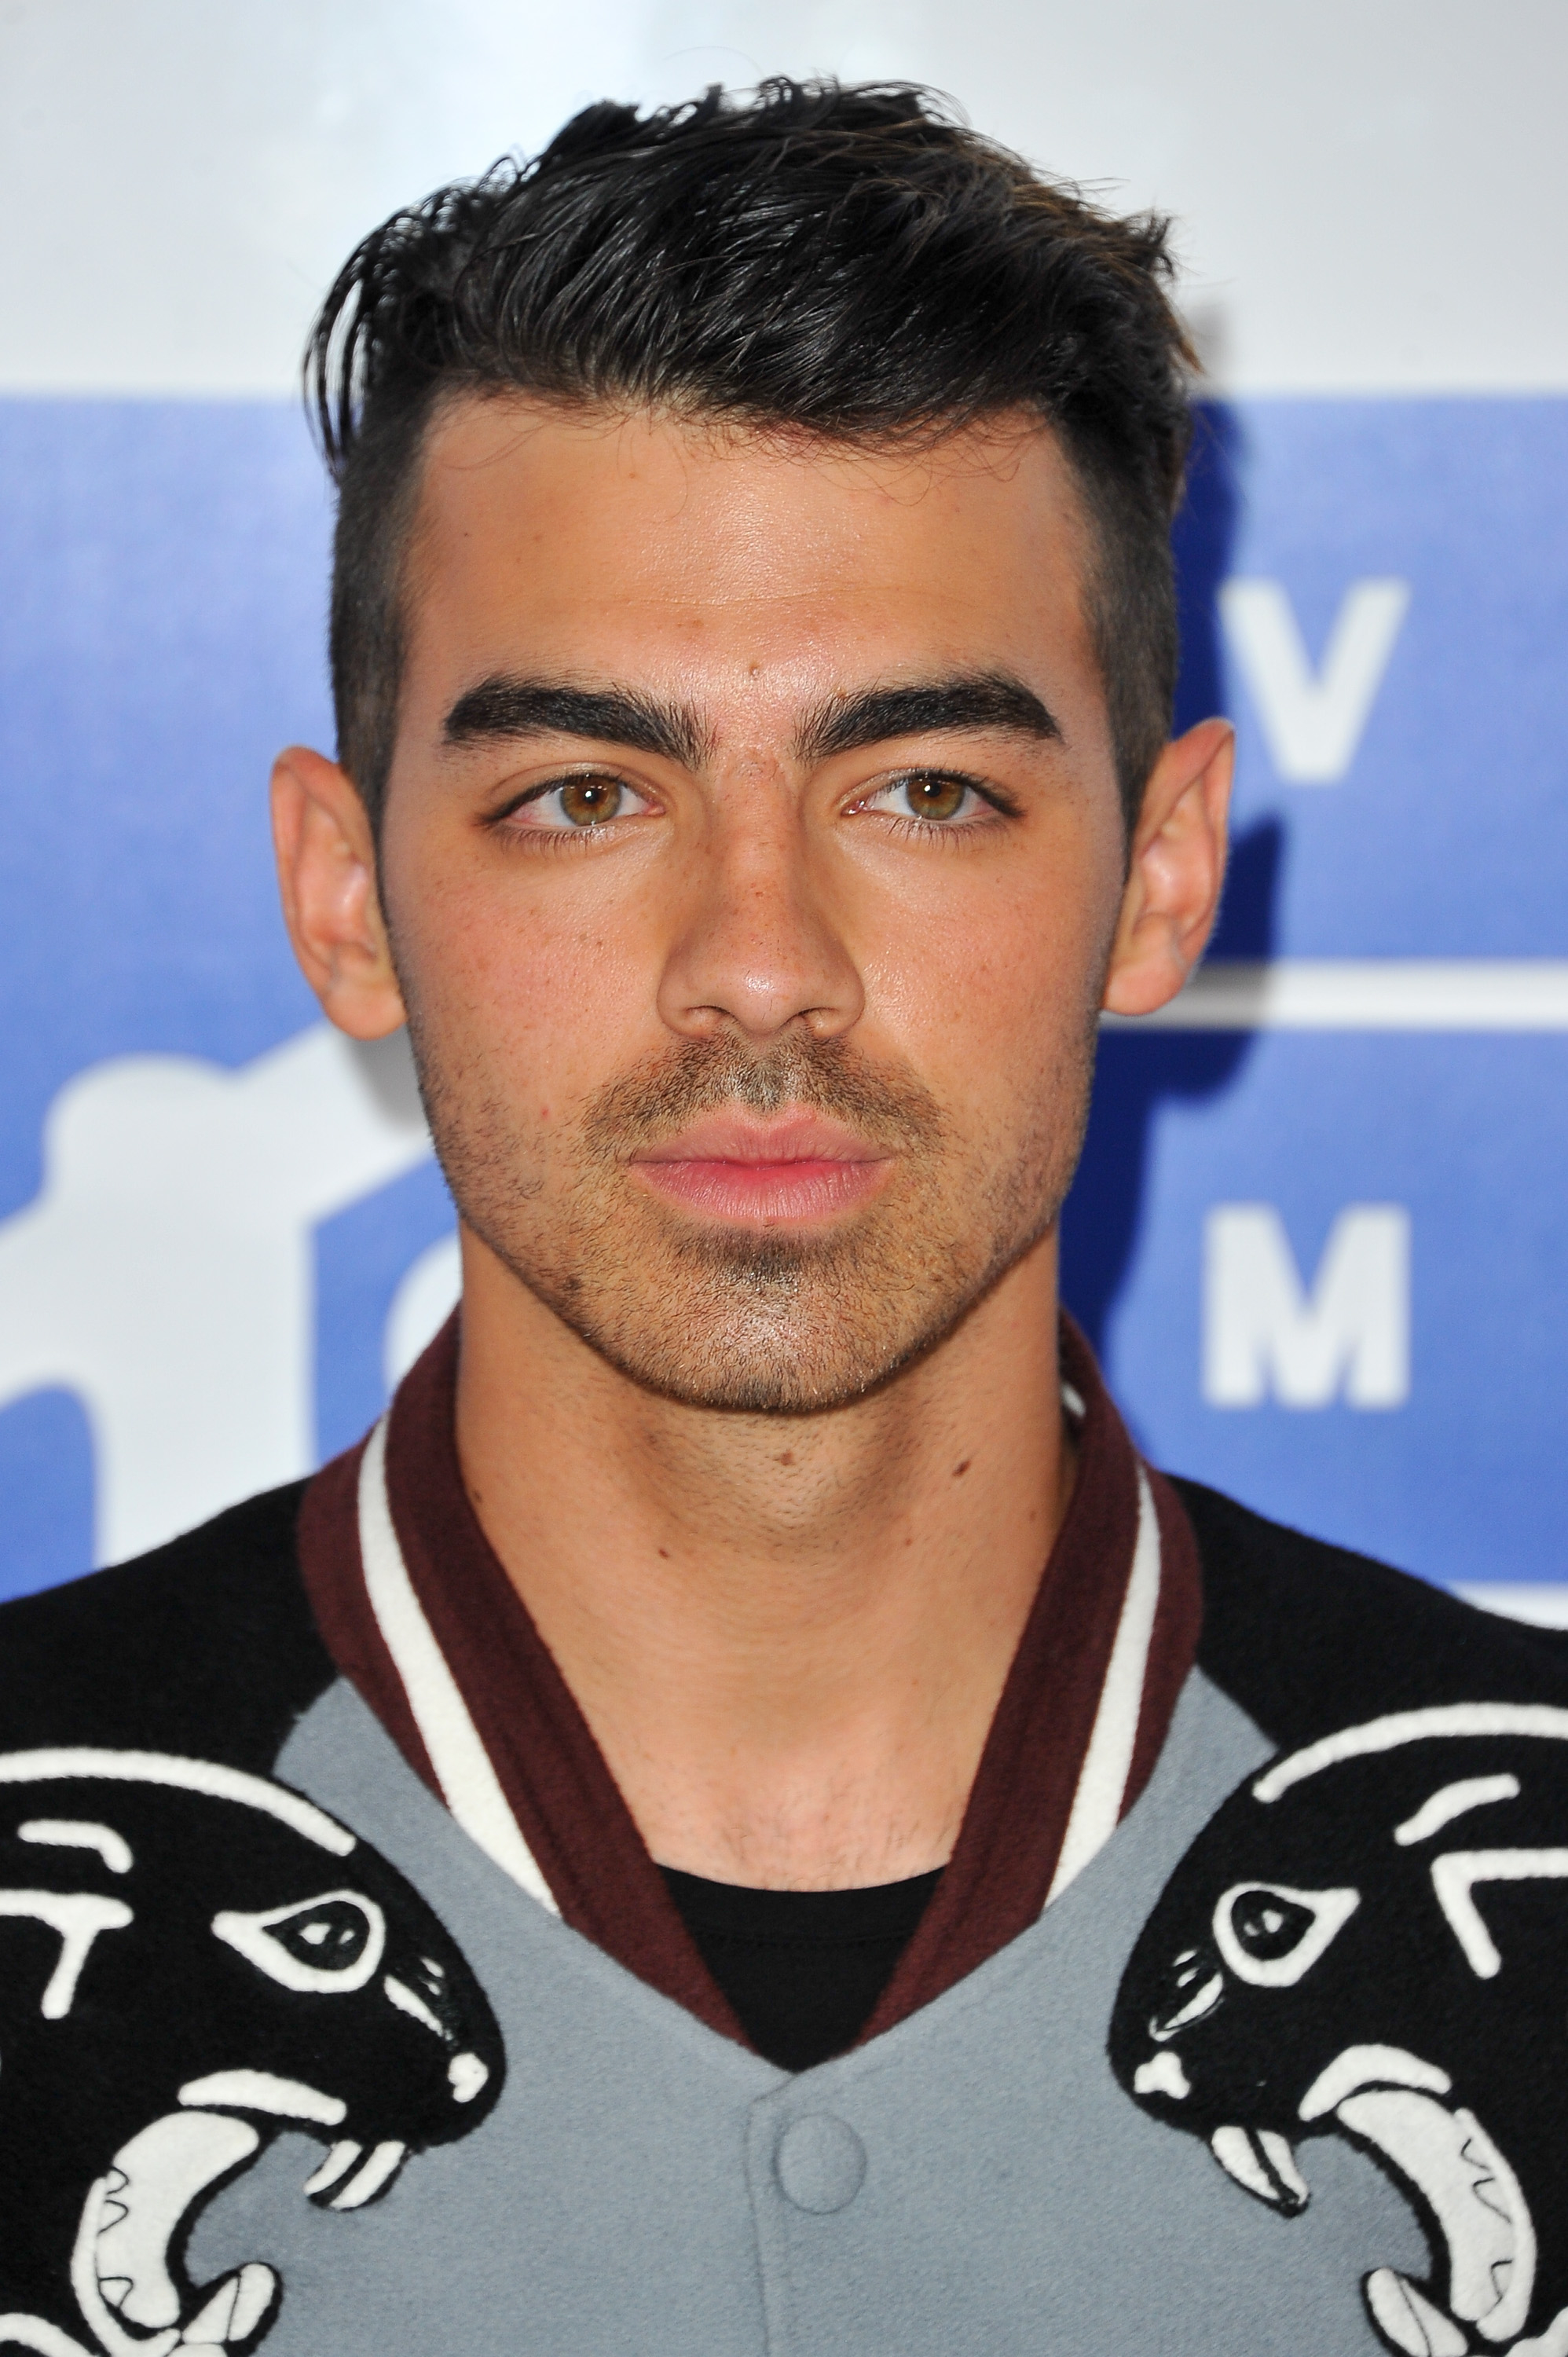 A closeup of Joe Jonas in a letterman-style jacket